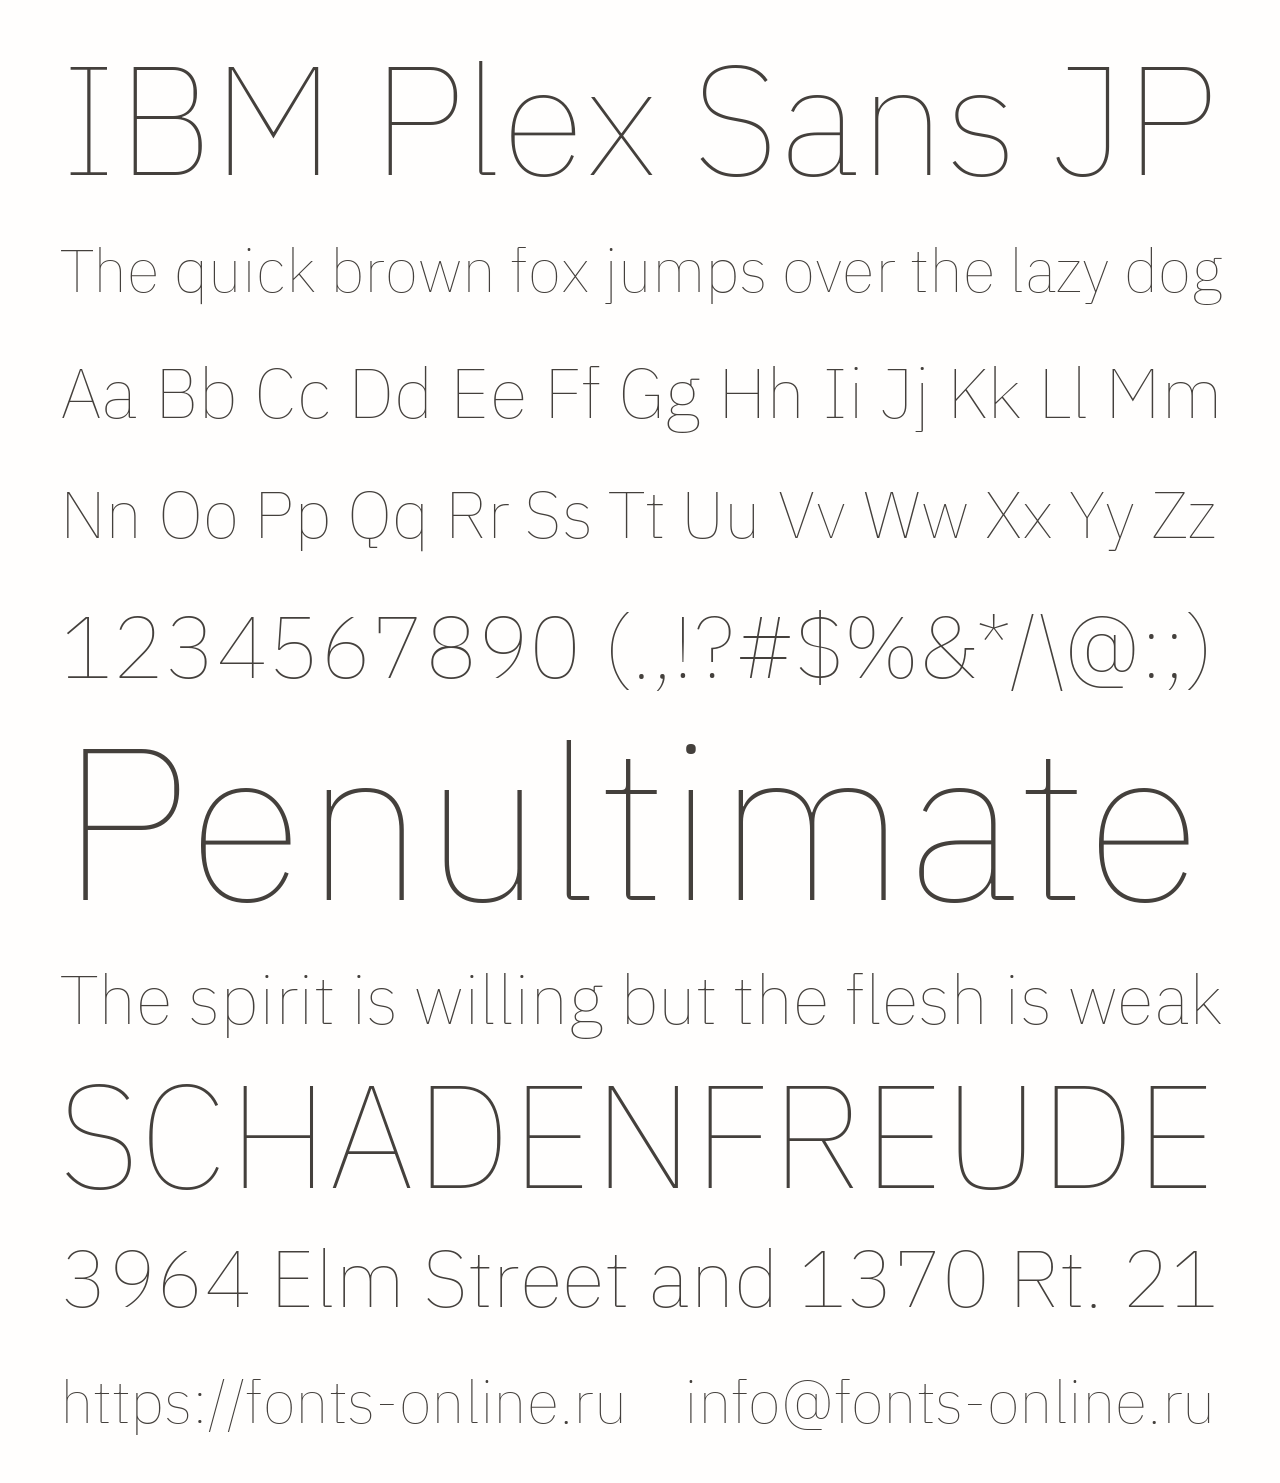 Шрифт IBM Plex Sans JP